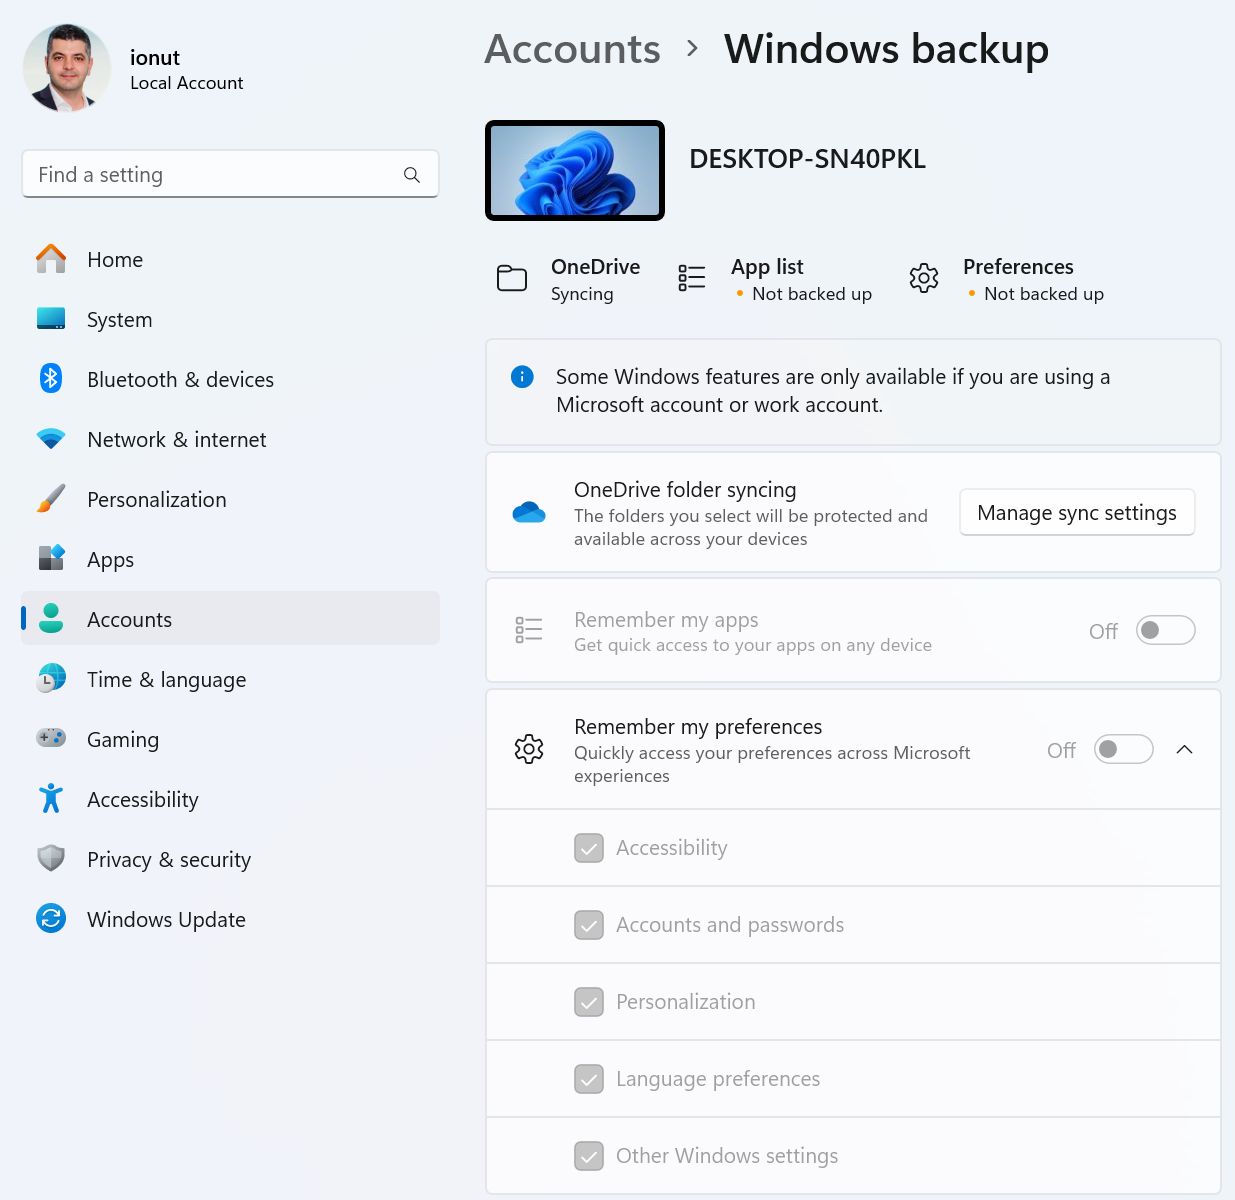 le impostazioni di backup di windows necessitano di un account online